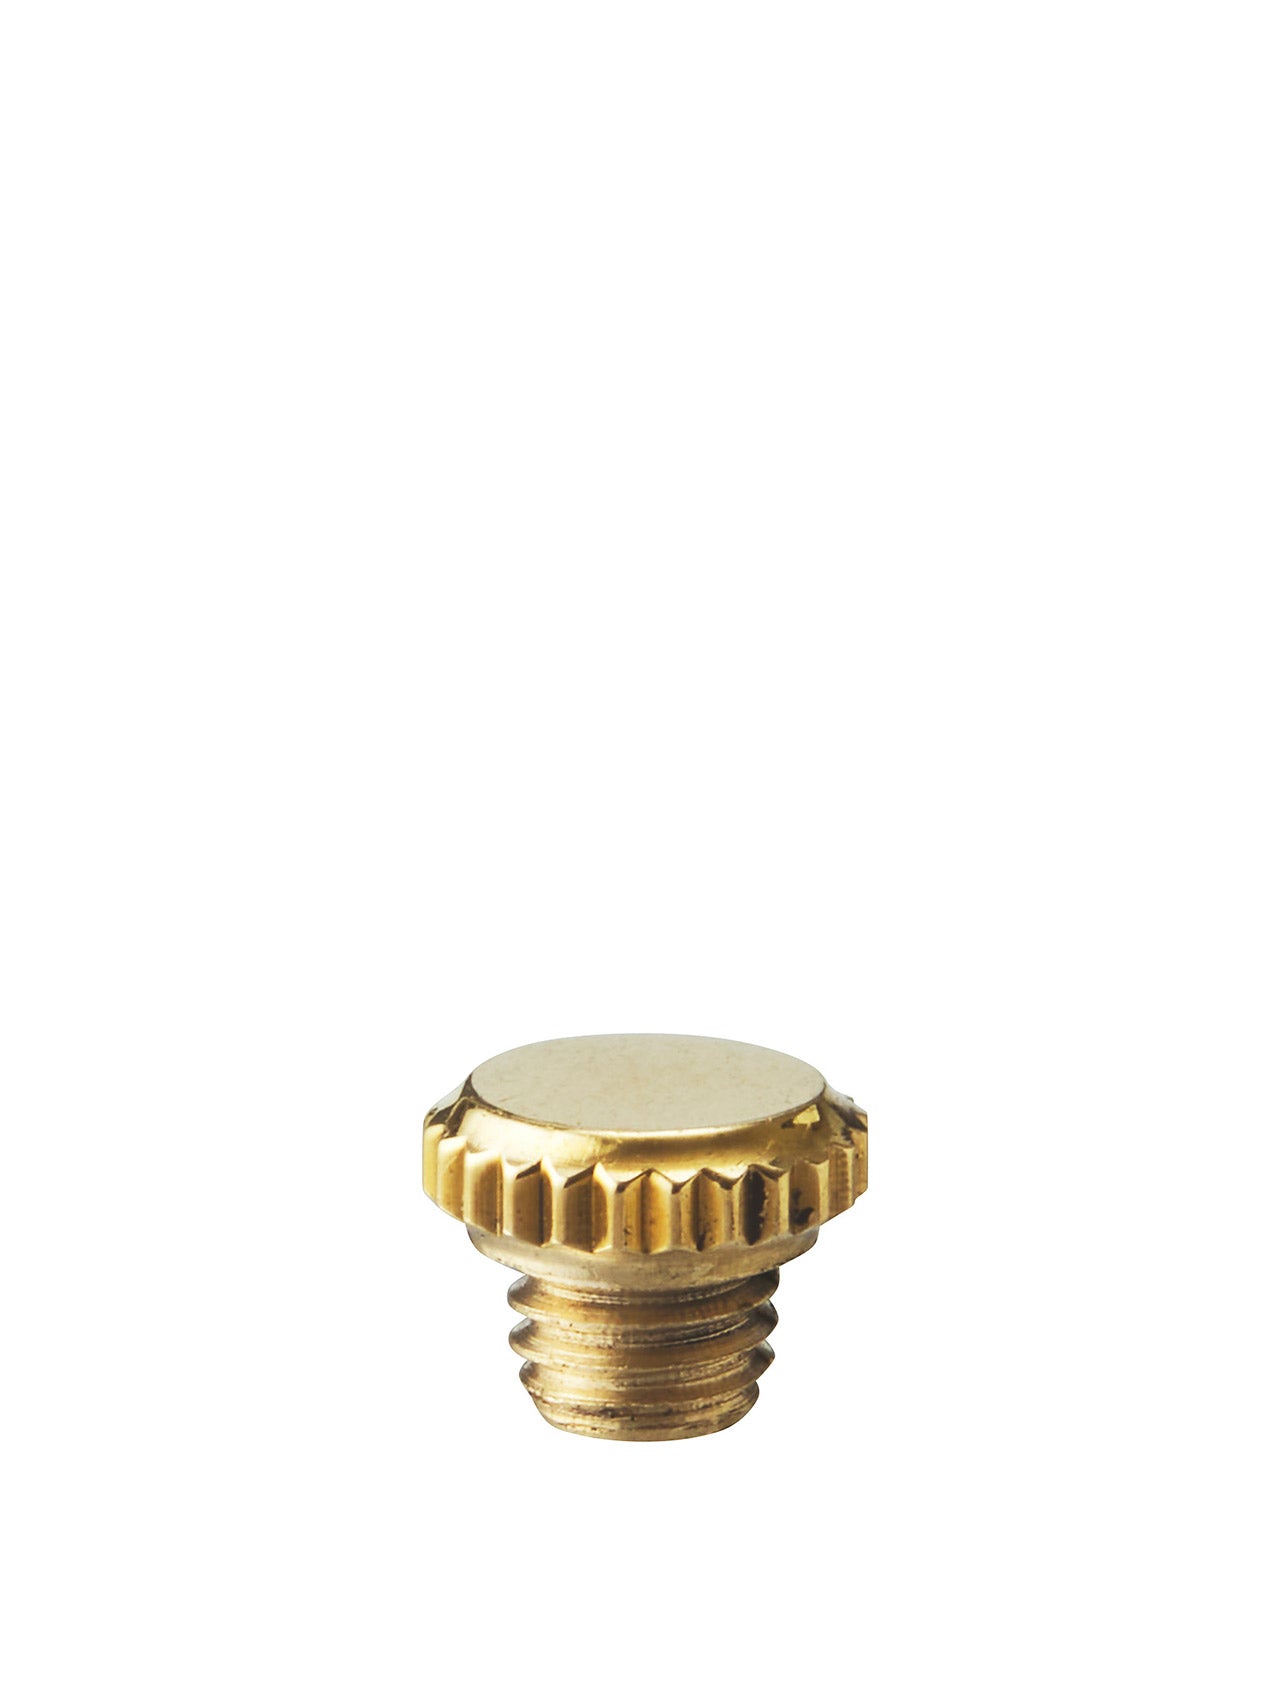 Duca screw, Polished Brass, 1 pc.